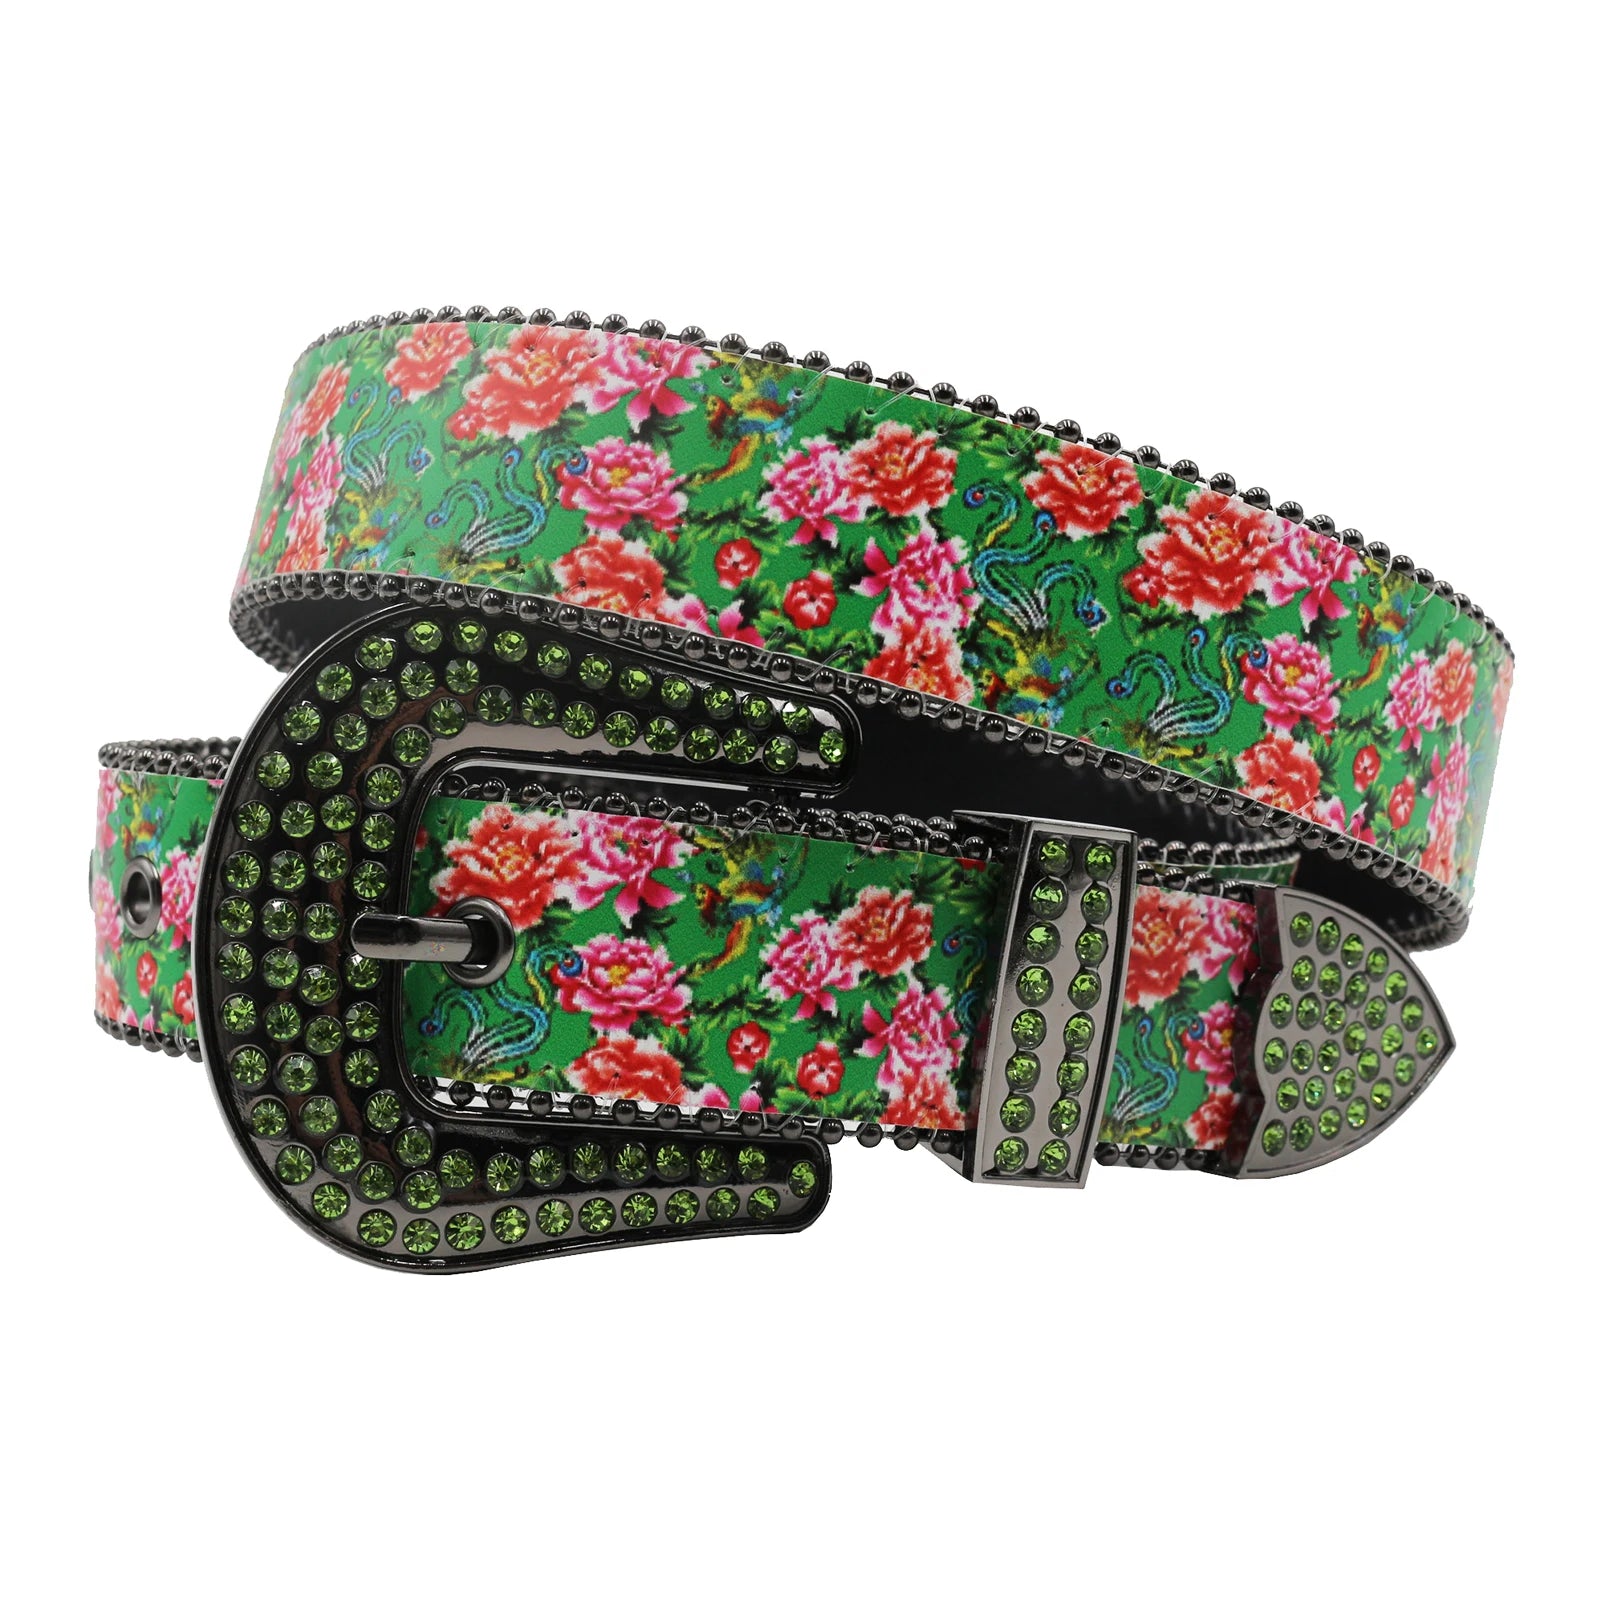 TEEK - Flower Print Belts BELT theteekdotcom MDH-Green 105cm/41.34in 